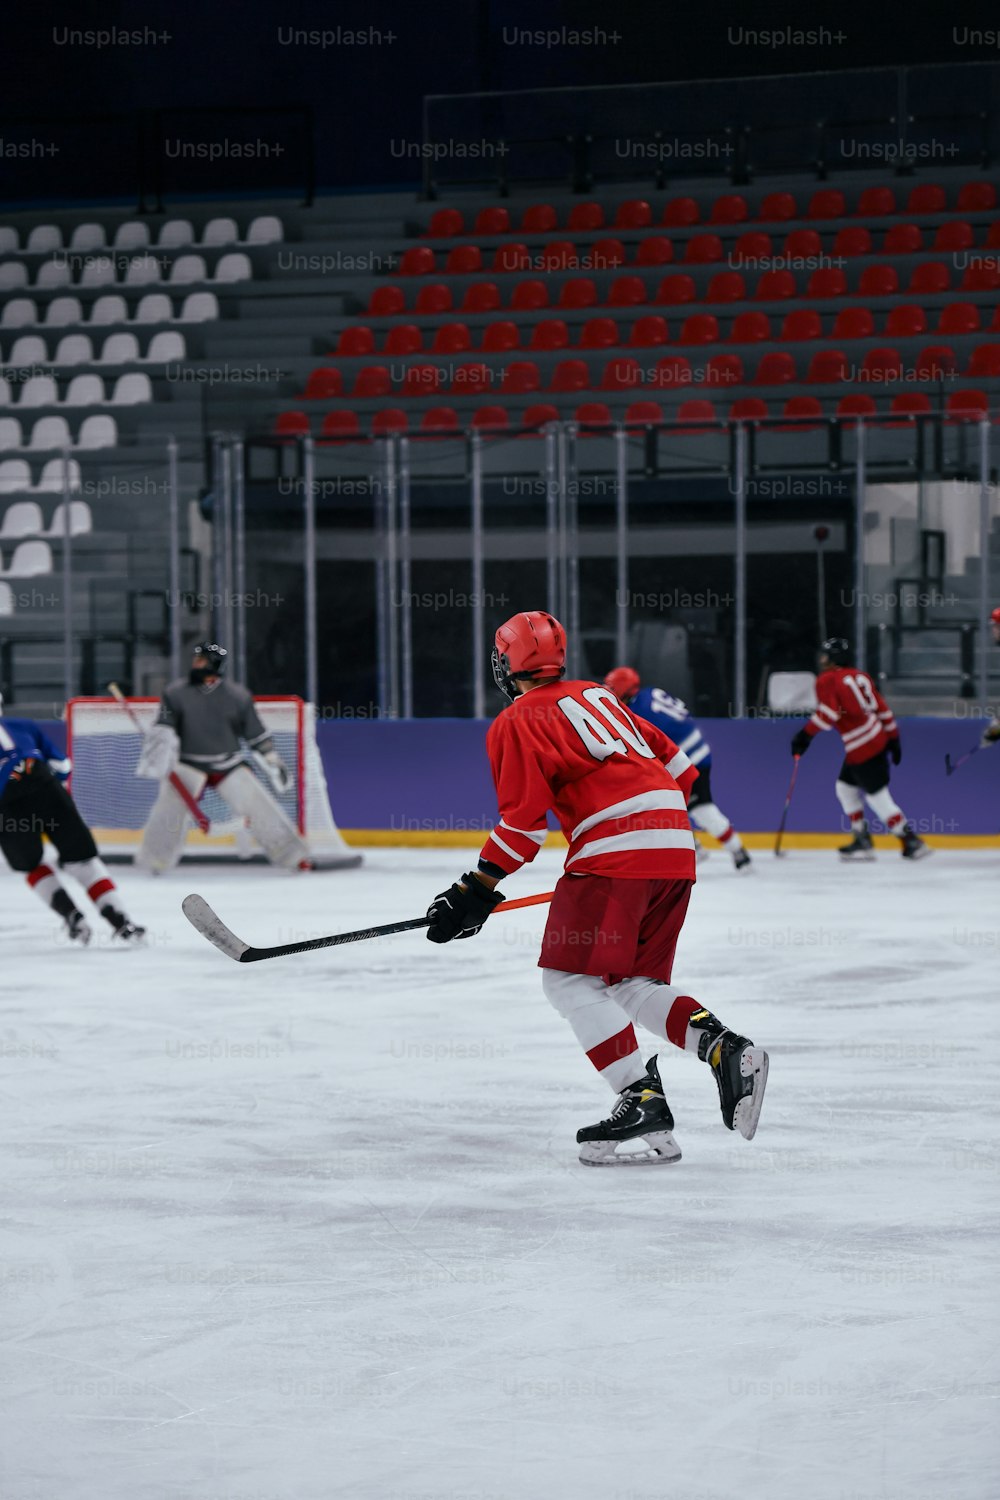 un groupe de personnes jouant au hockey sur glace